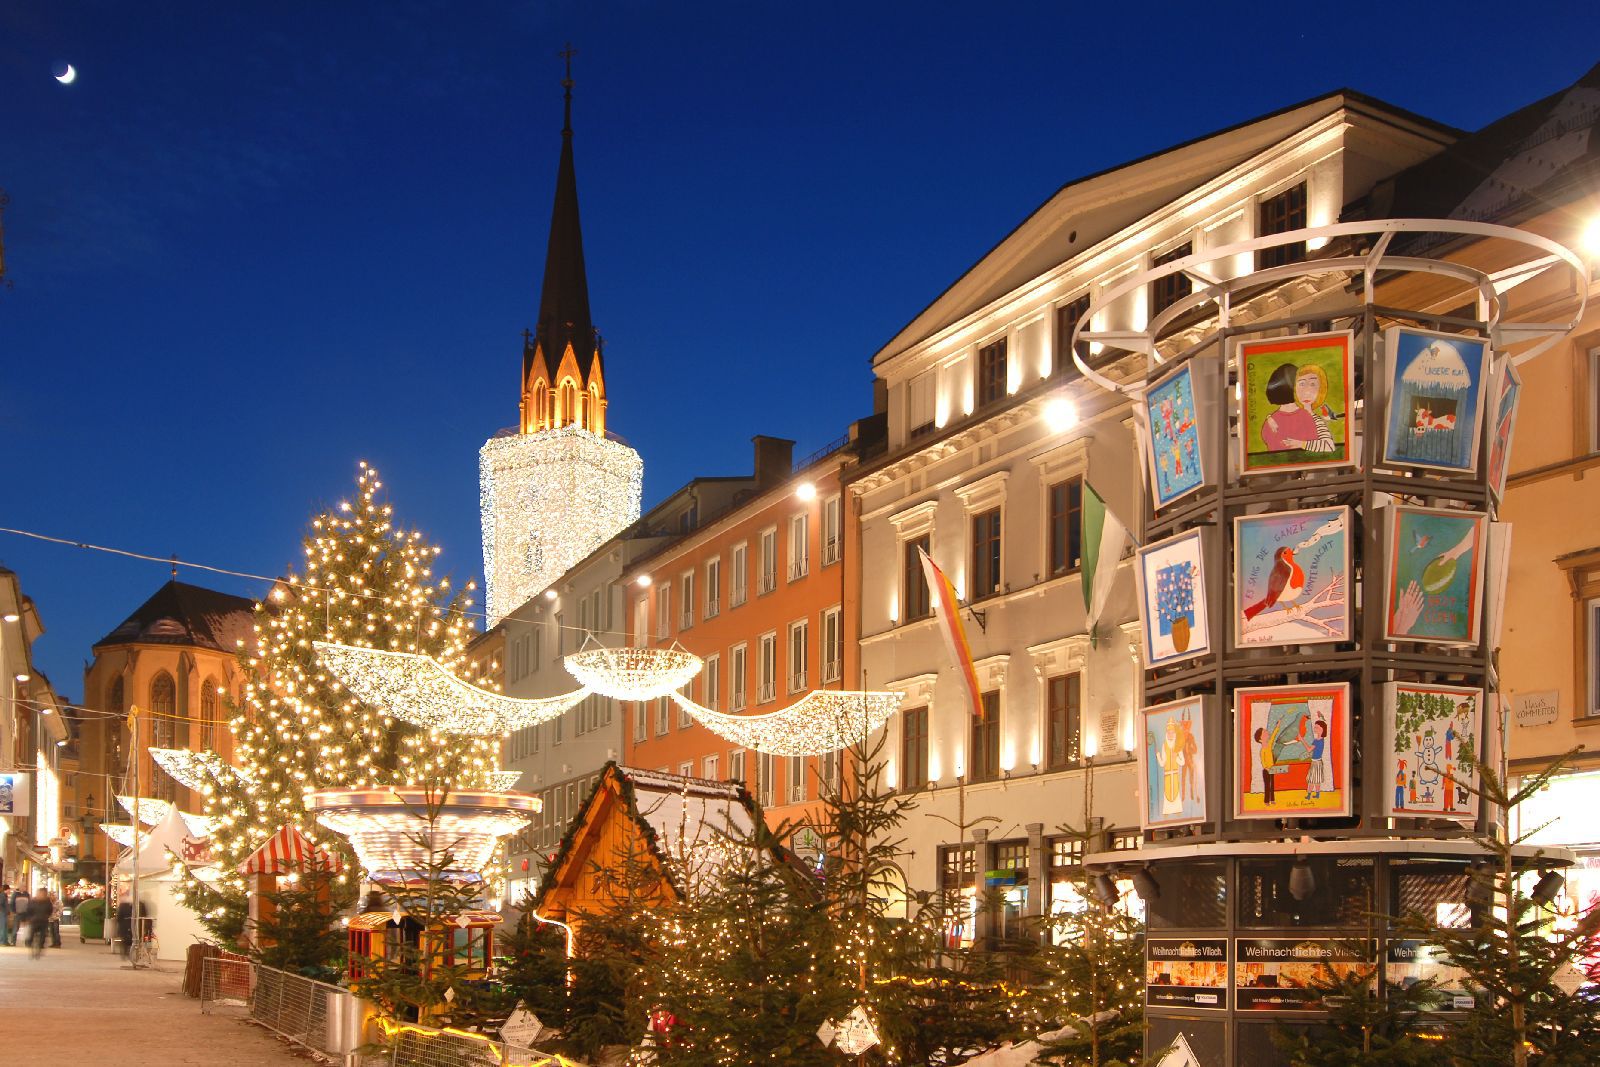 Villachban a csodásan kivilágított torony alatt - mely mint egy hatalmas gyertya ragyog a város felett - található a karácsonyi vásár.